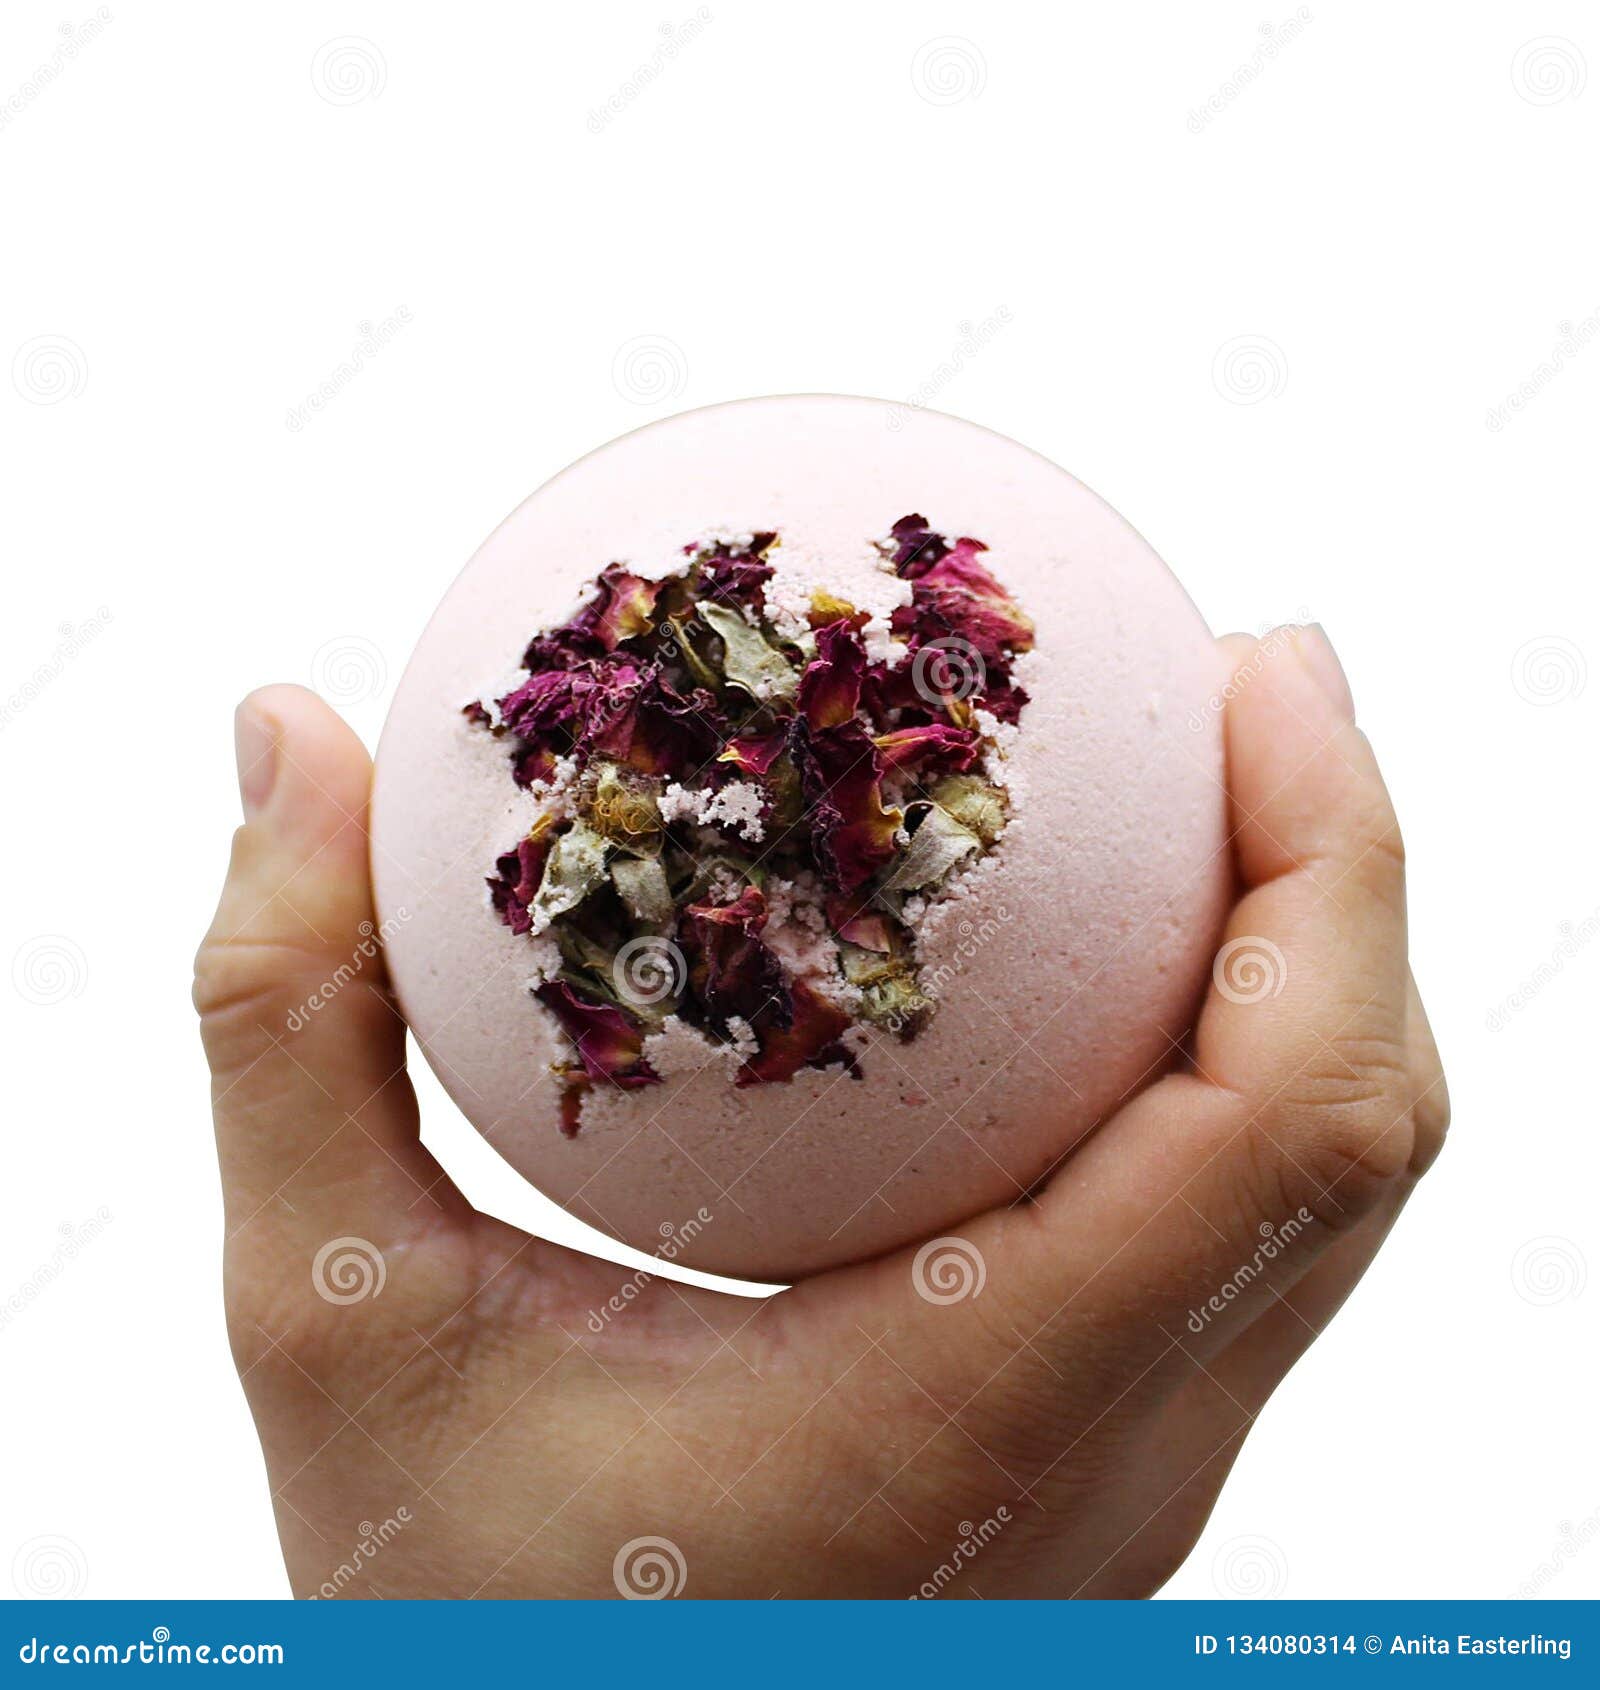 Rose petal bath bomb stock photo. Image of bomb, rose - 134080314